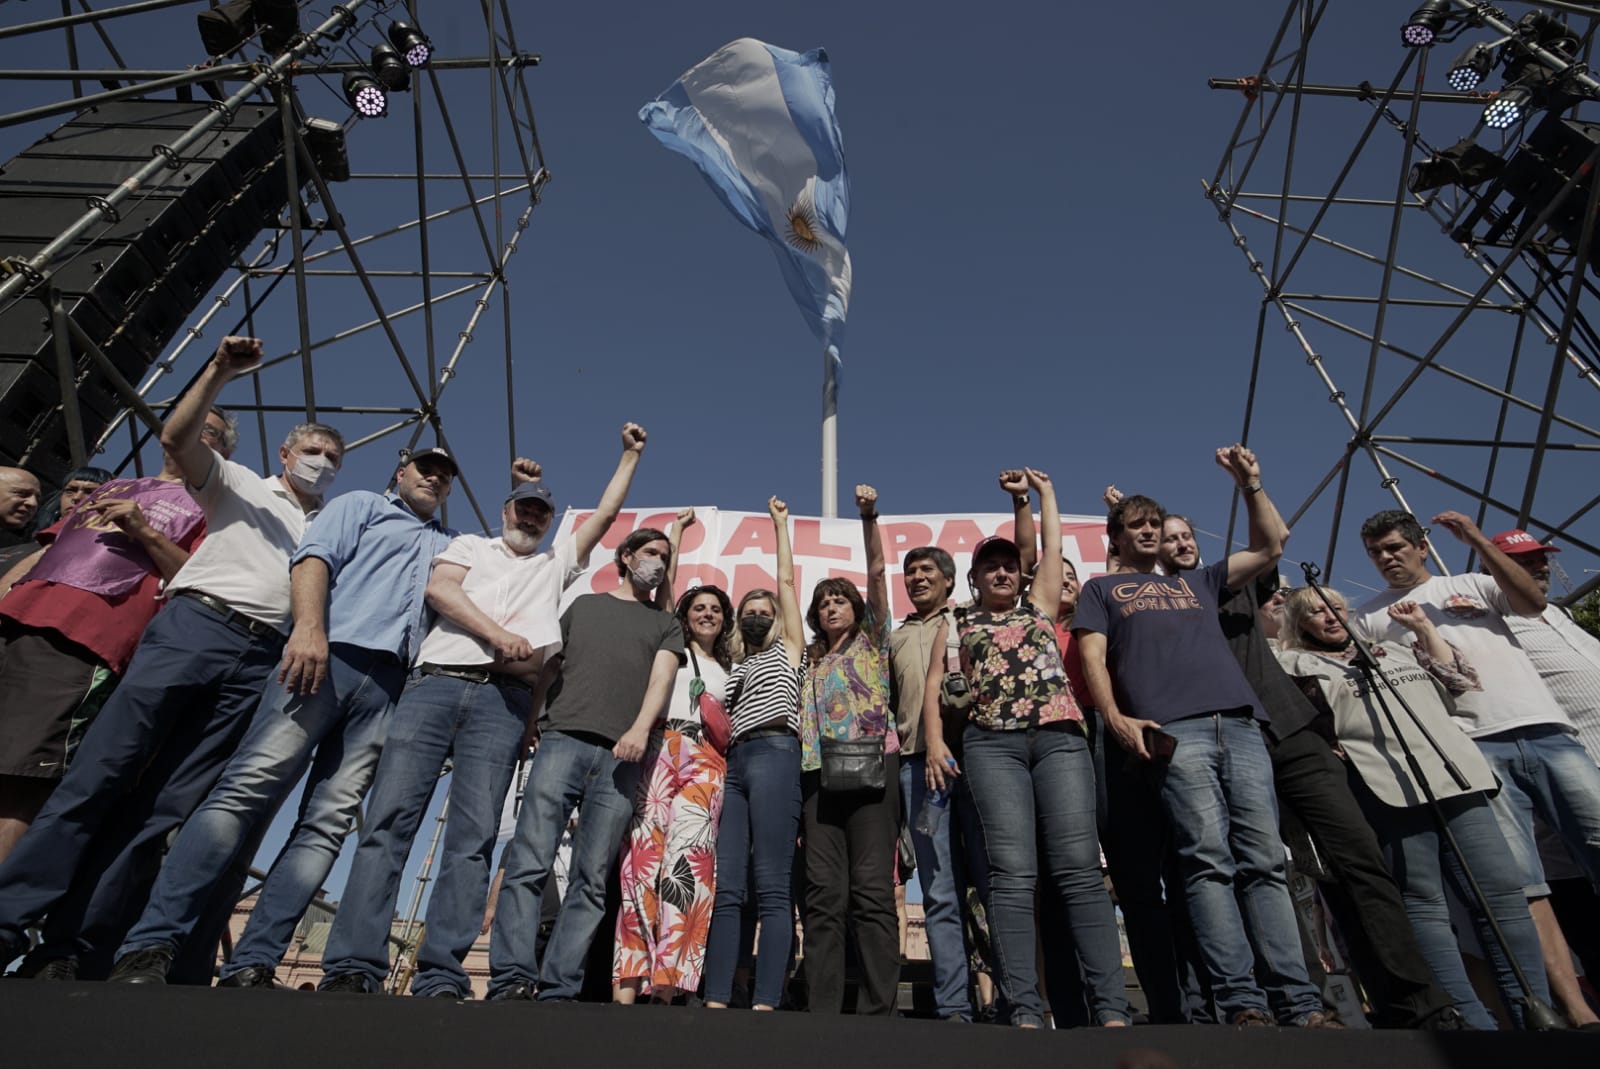  "Esta es la Plaza de los que decimos NO al FMI en Argentina"